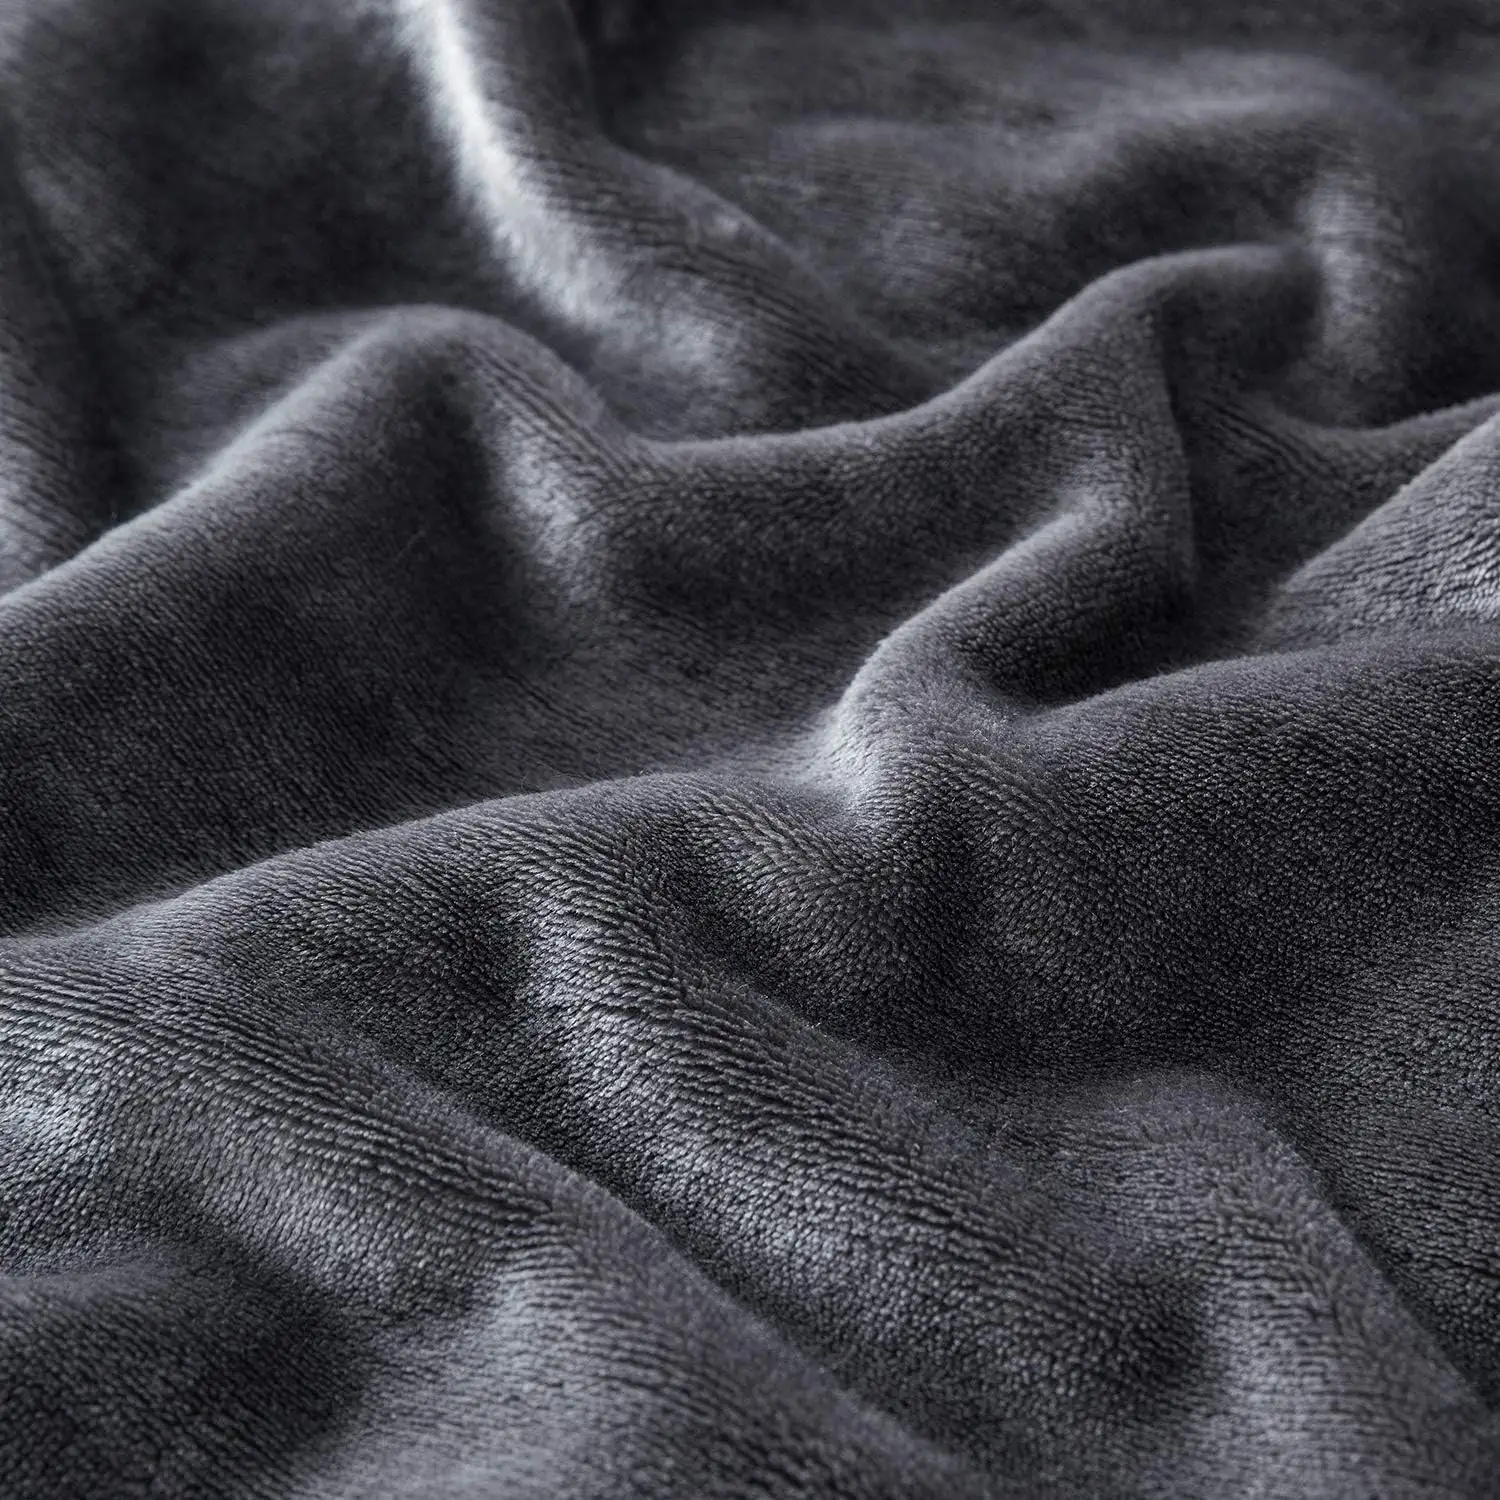 Disesuaikan tebal hangat ukuran Ratu mewah melempar selimut Sherpa untuk tempat tidur